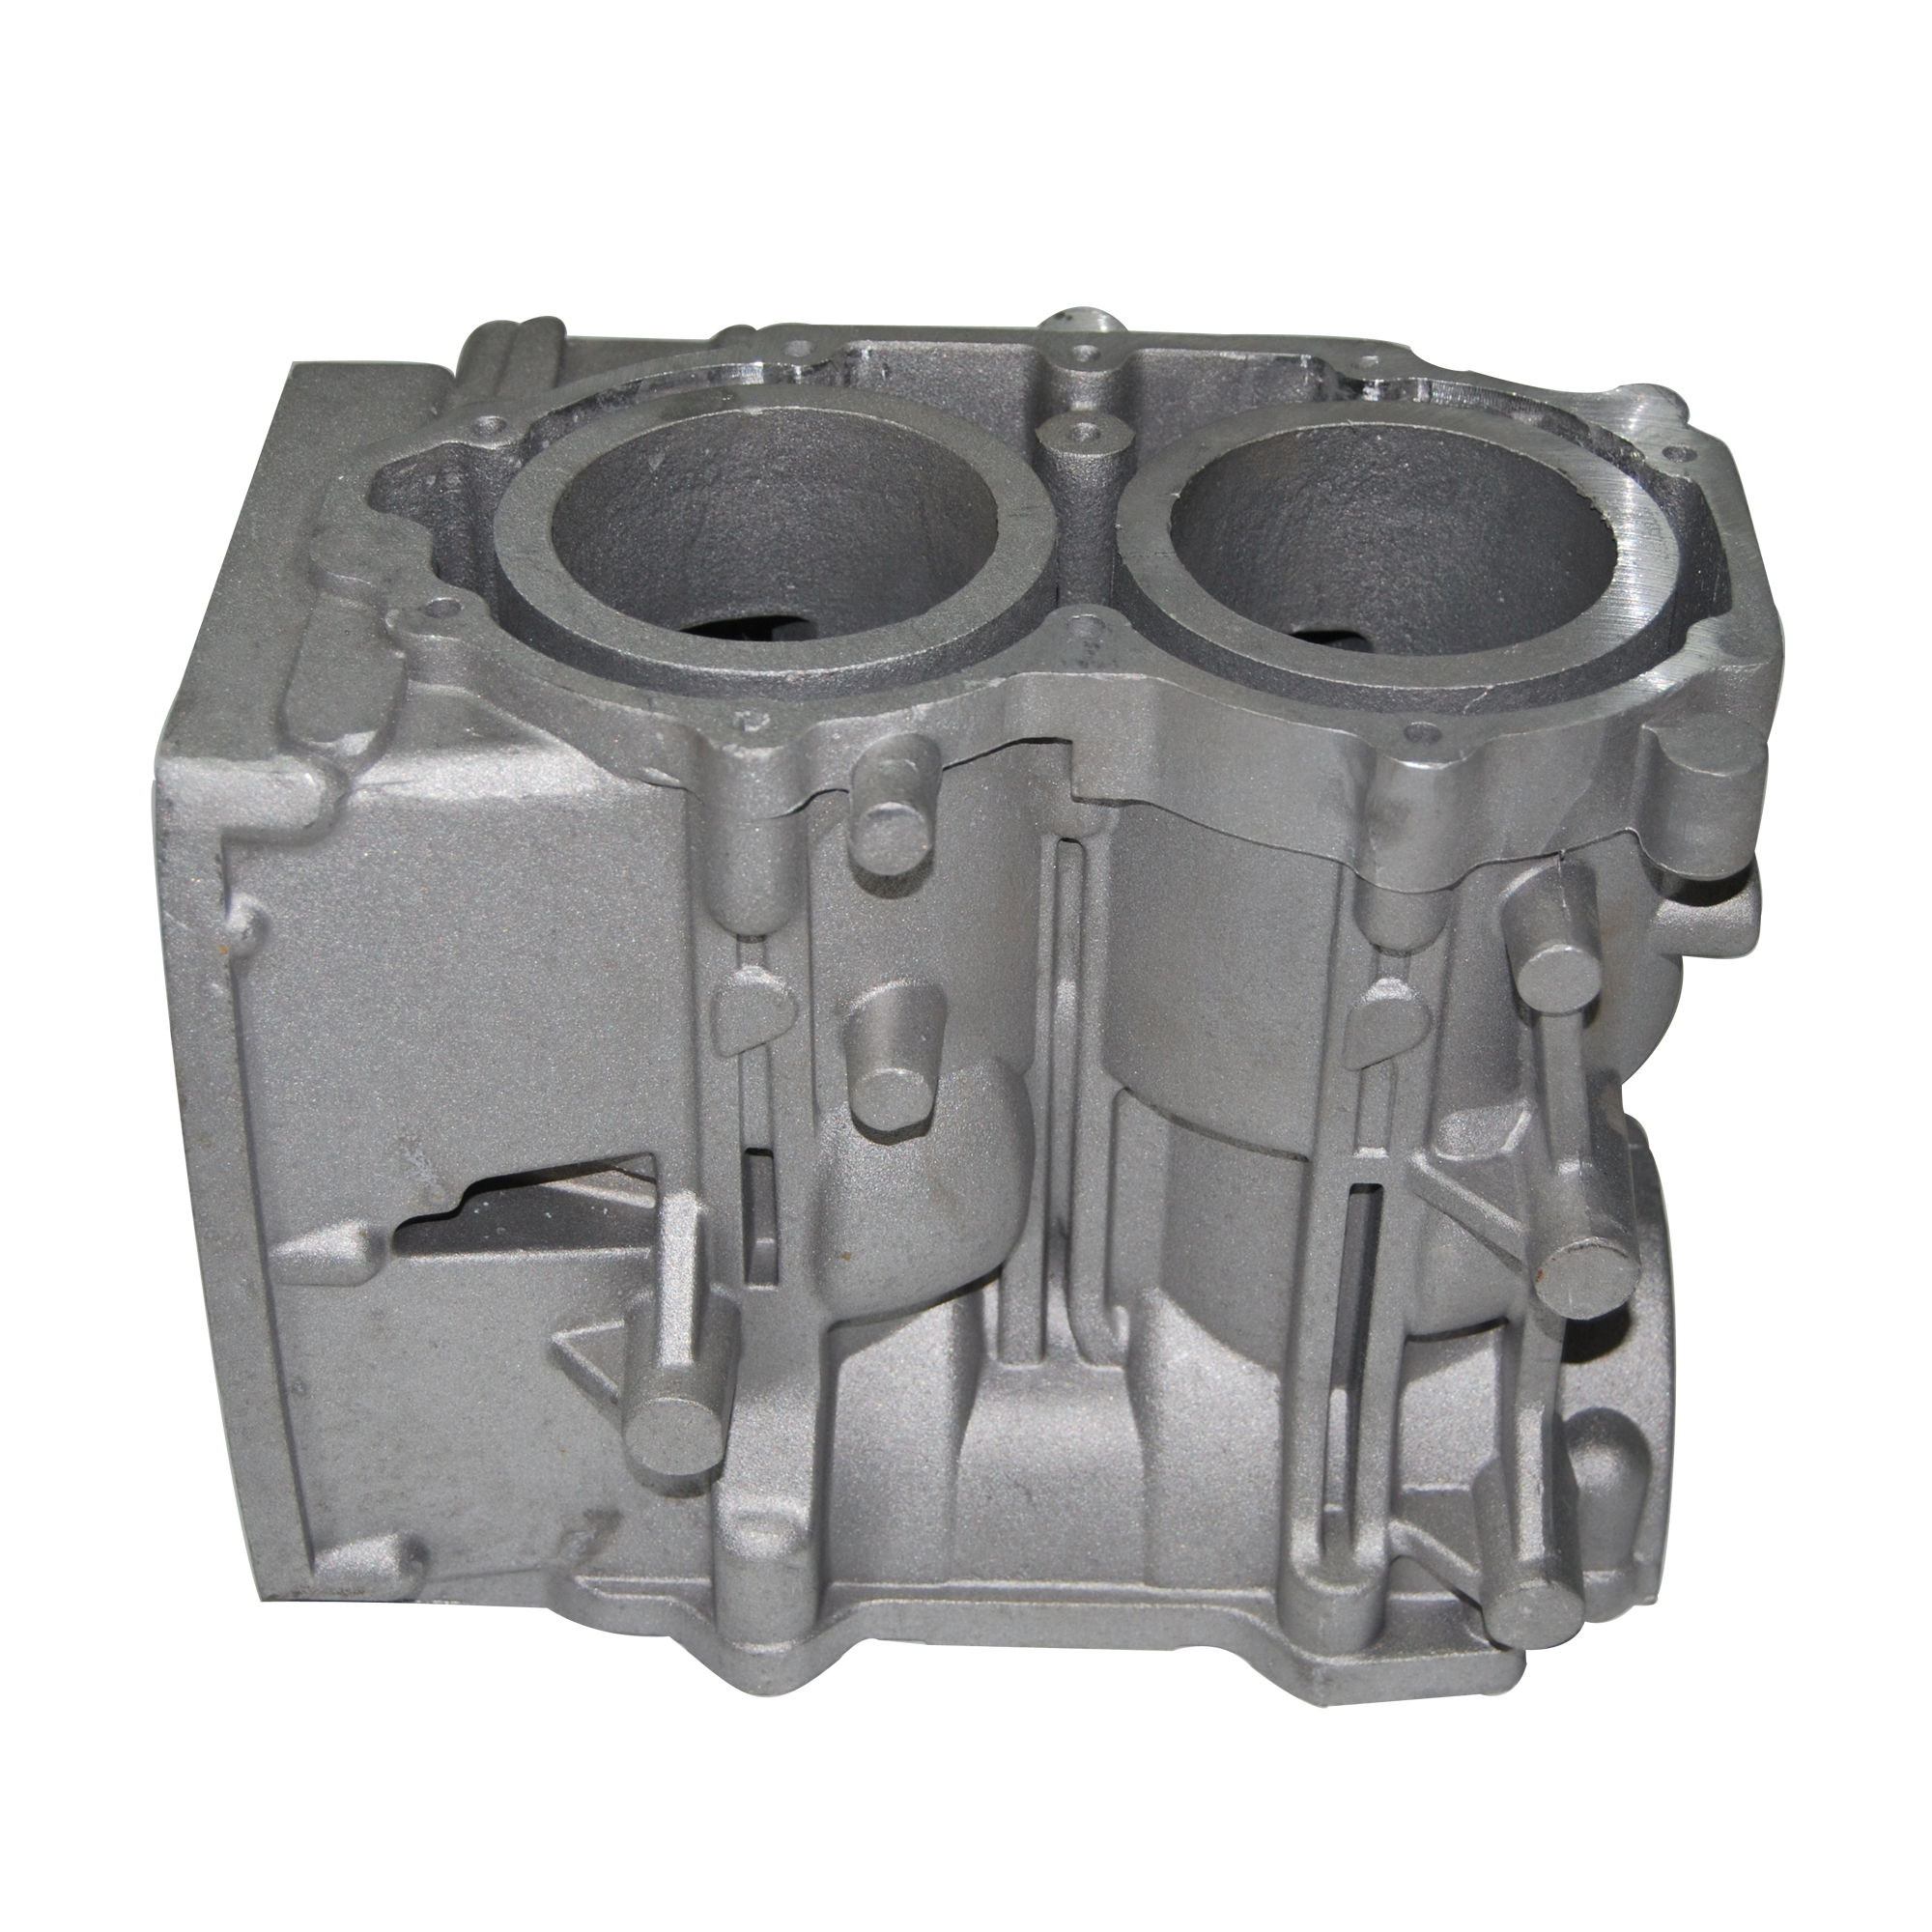 Matech Custom Metal Cast Aluminum Low Pressure Casting Valve Body(图12)